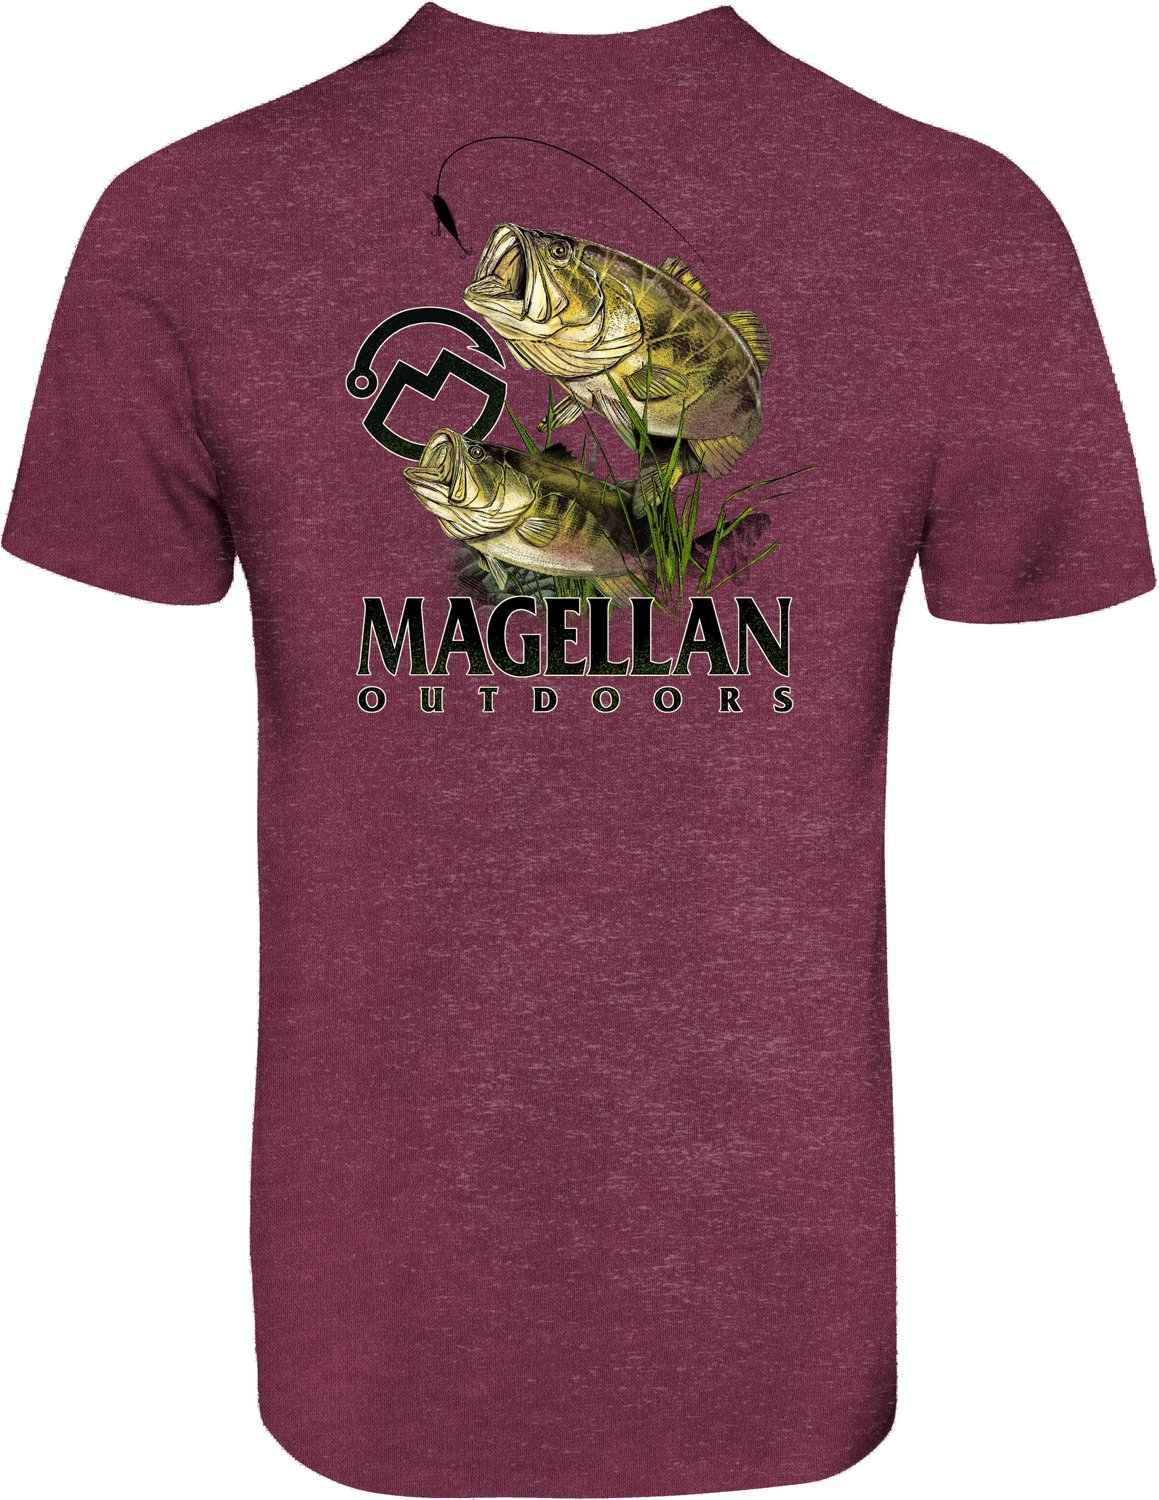 Magellan Outdoors Shirt Adult Large Green Short Sleeve Bass, 49% OFF